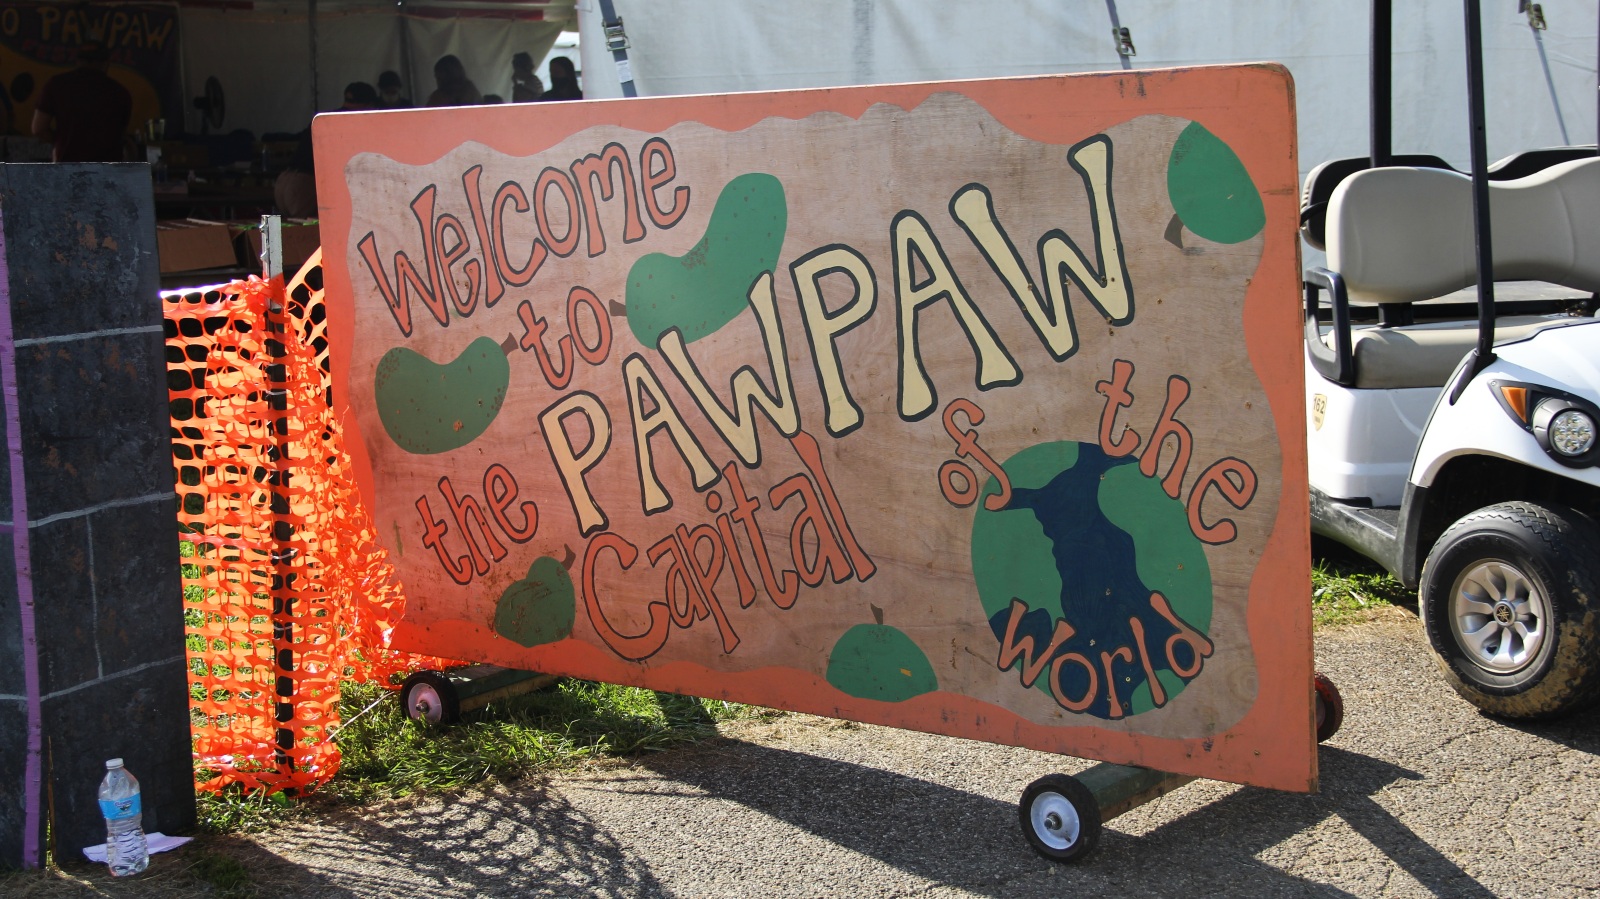 Ohio Pawpaw Festival